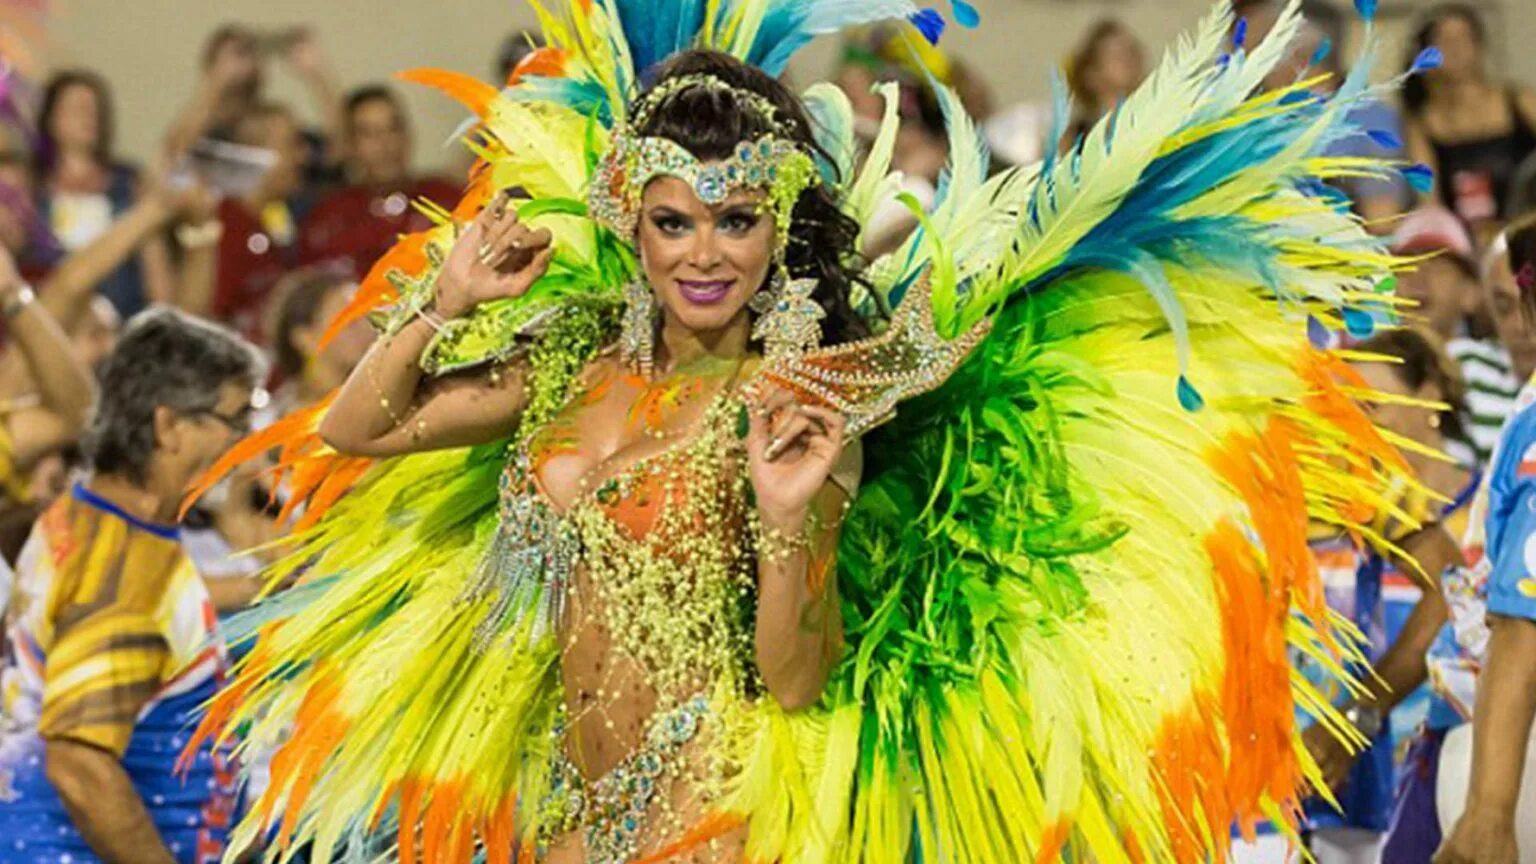 Карнавал в Рио-де-Жанейро. Южная Америка Рио де Жанейро карнавал. Самба карнавал в Бразилии. Рио-де-Жанейро карнавал костюмы.